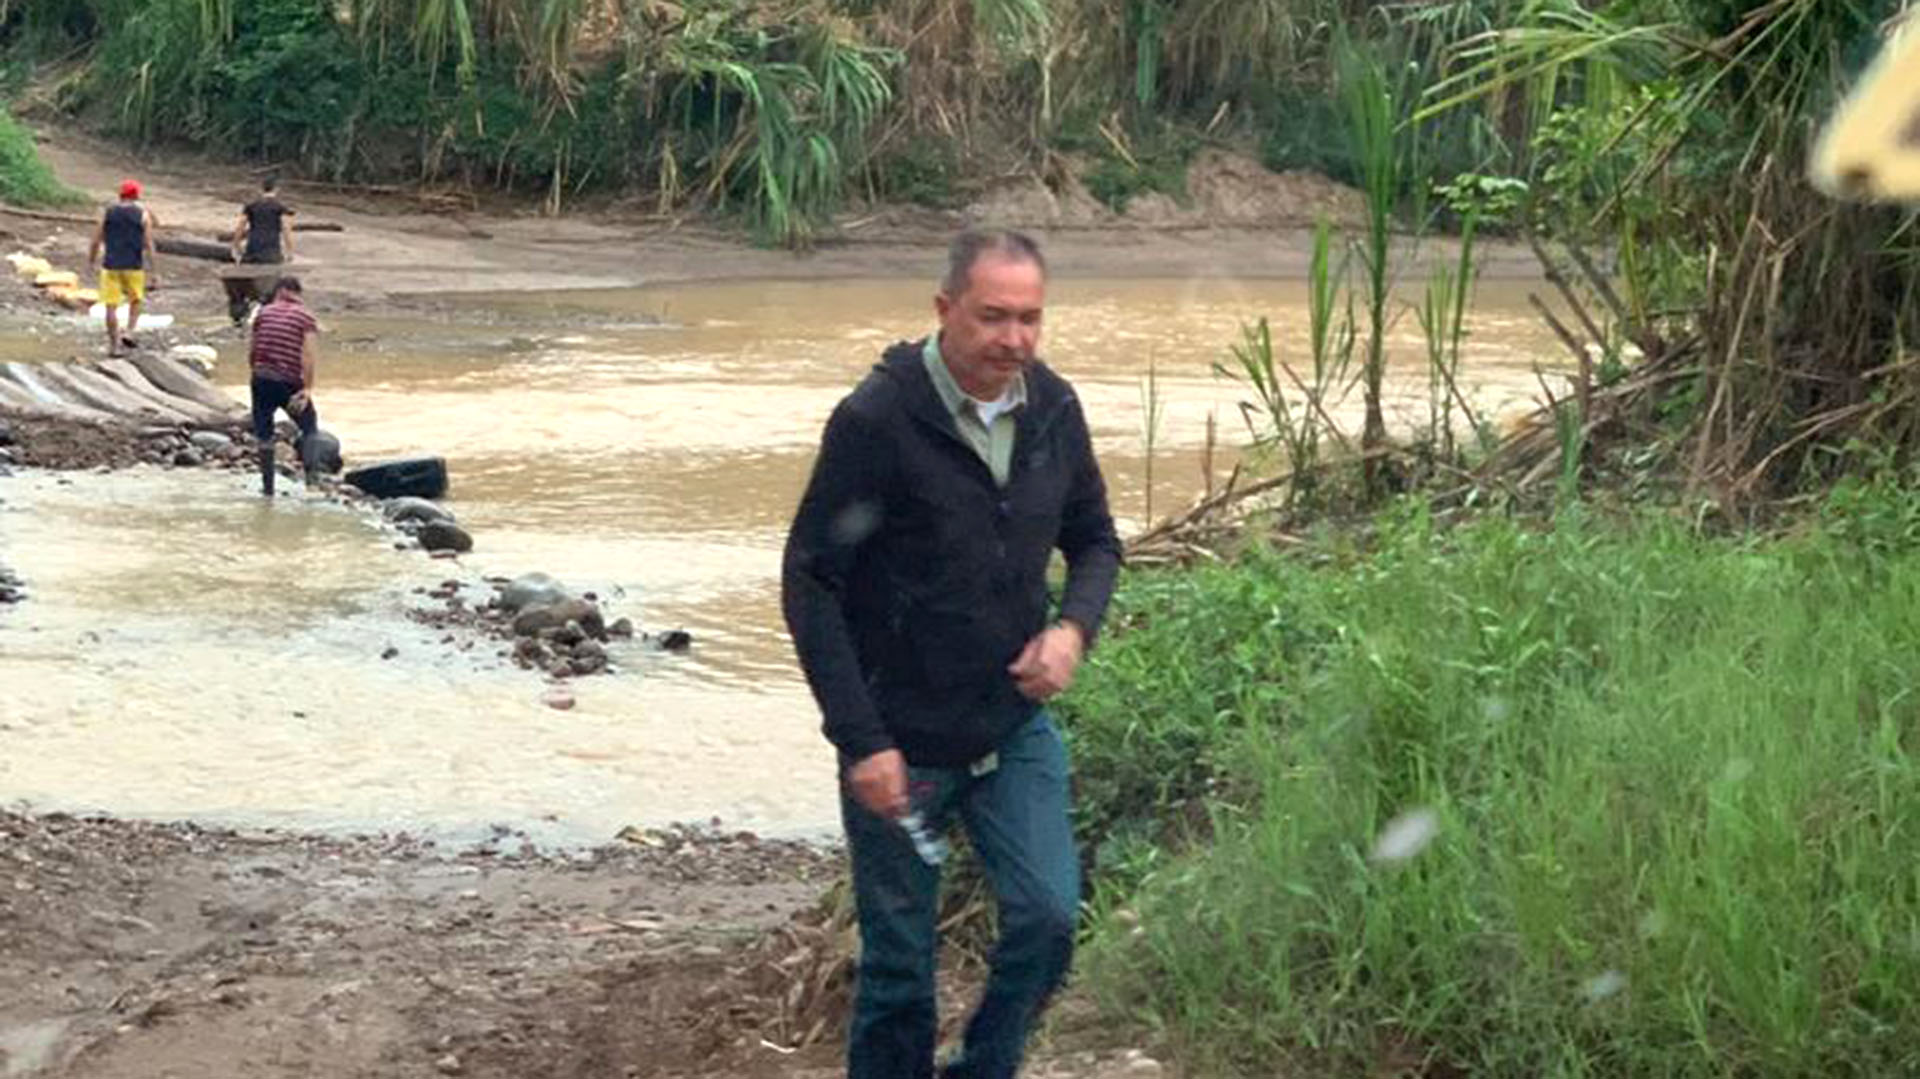 Blanco cruzó este lunes hacia Colombia por uno de los pasos ilegales conocidos como trochas, que abundan en los 2.219 kilómetros de frontera que comparten los dos países.